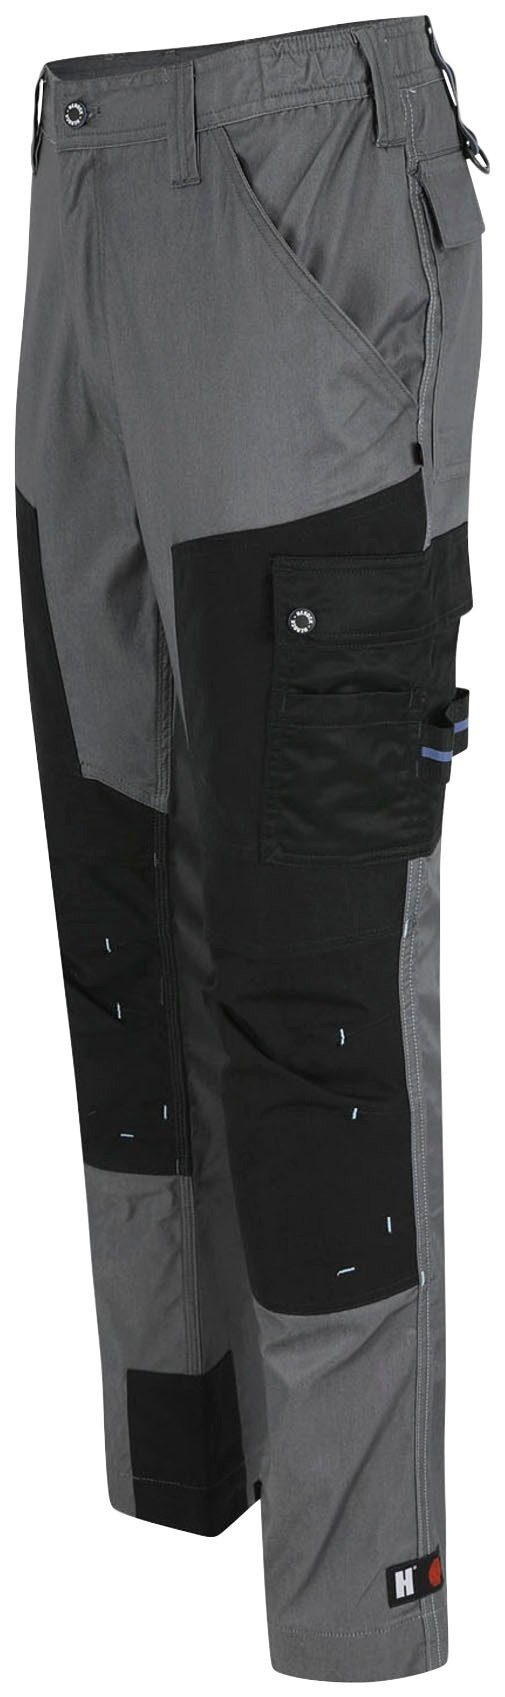 Herock Arbeitshose leicht Capua Viele Coolmax® mehrere Hose Stretch, mit Farben Taschen, grau -Techn